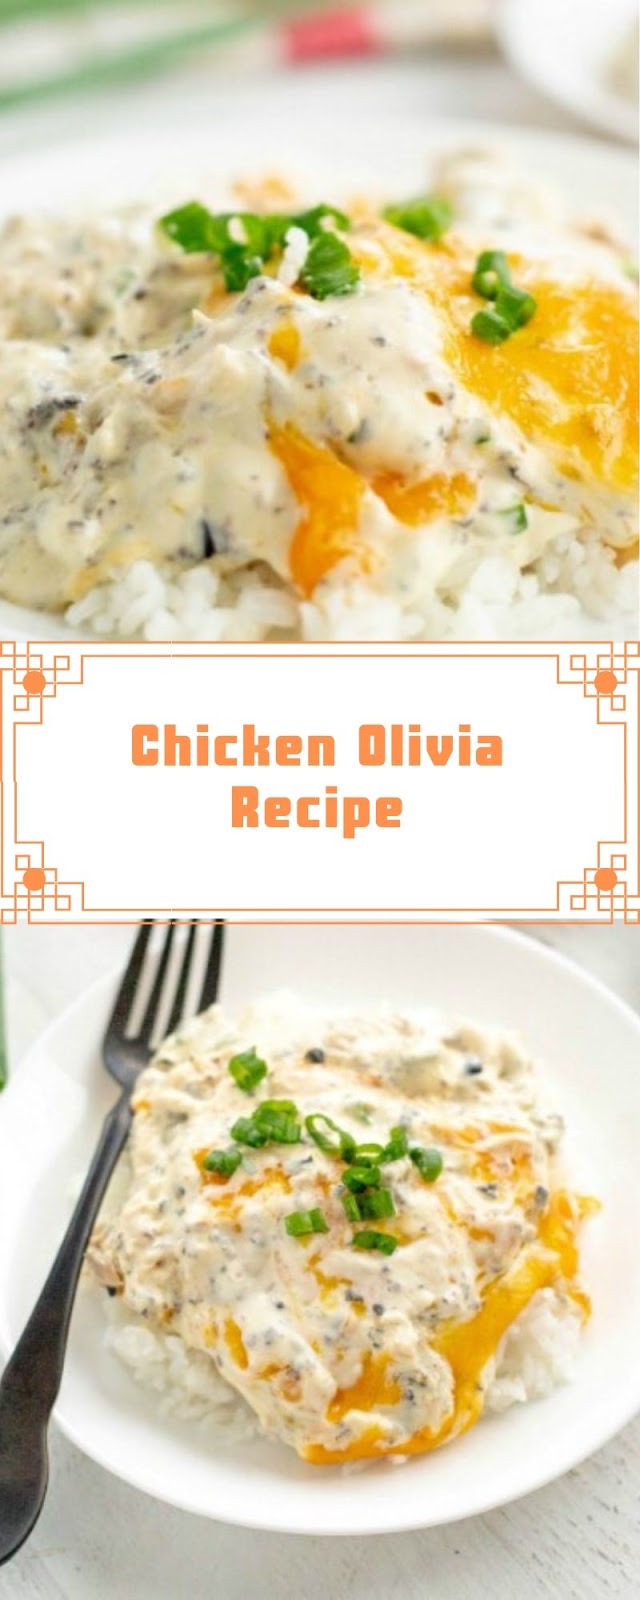 Chicken Olivia Recipe